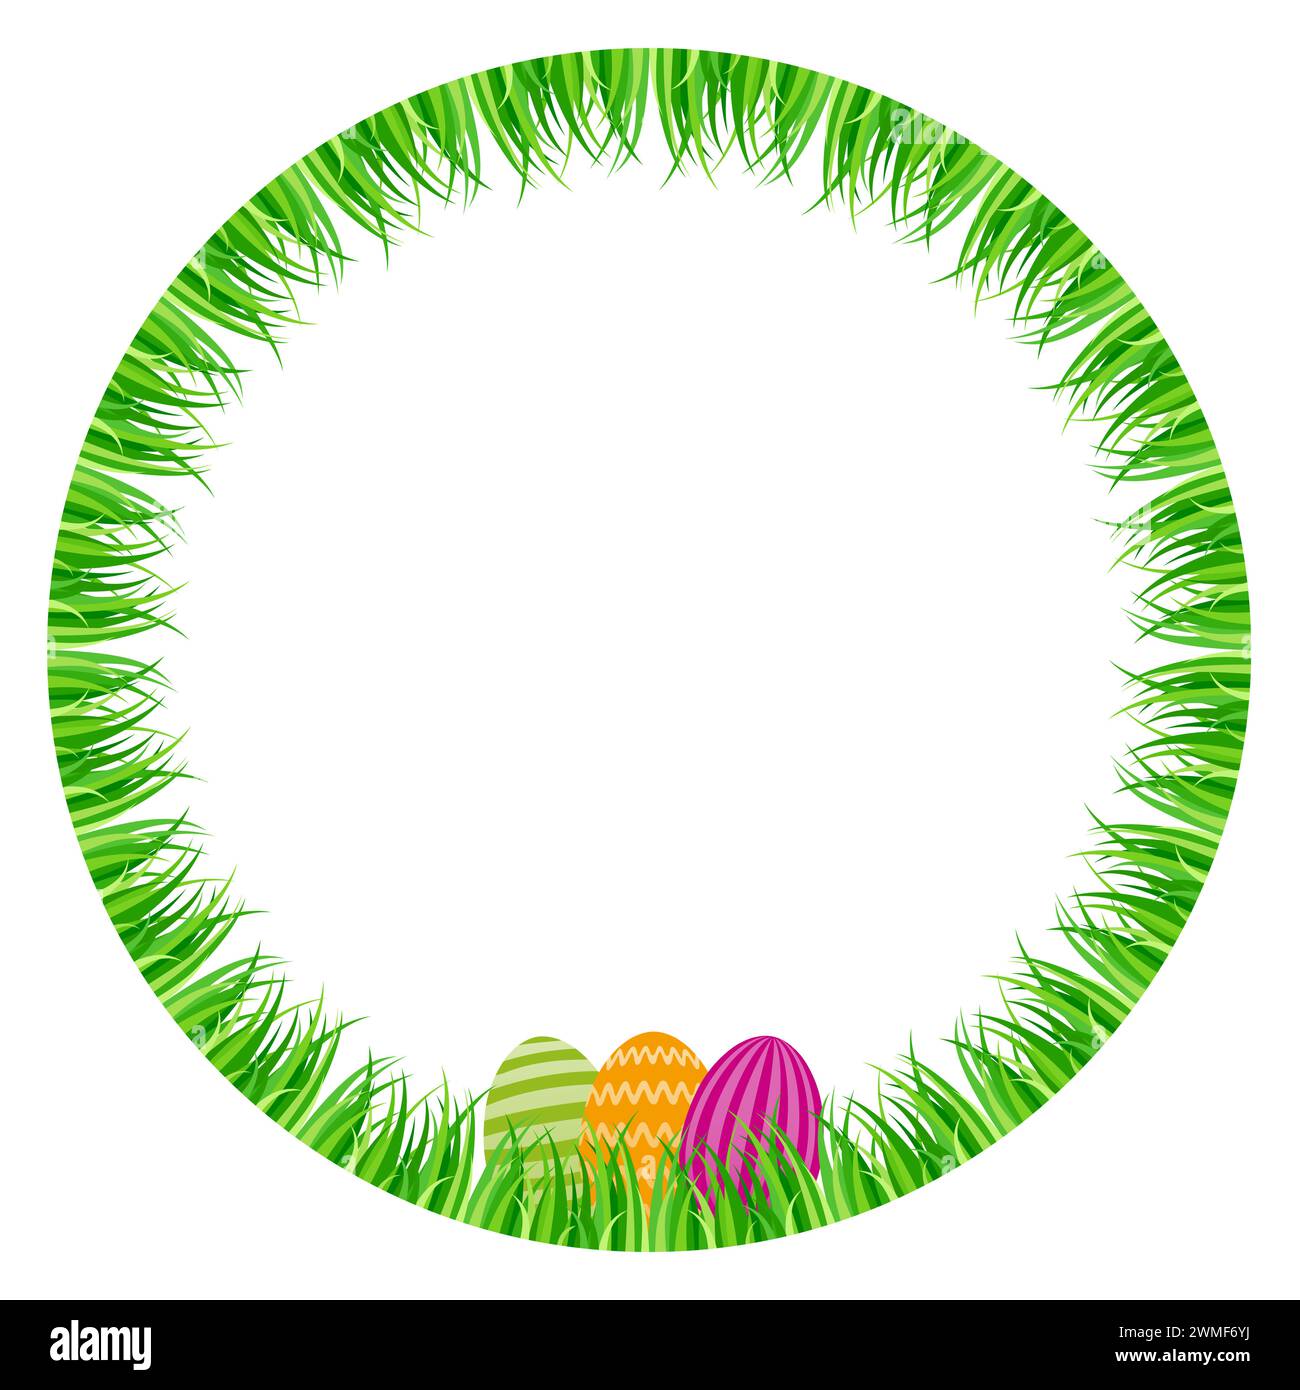 Ostereier versteckt in einem grünen Graskreis. Bunte Paschal-Eier, angeordnet auf einem runden Rasen. Symbol für Eierjagd, eine Schatzjagd zu Ostern. Stockfoto